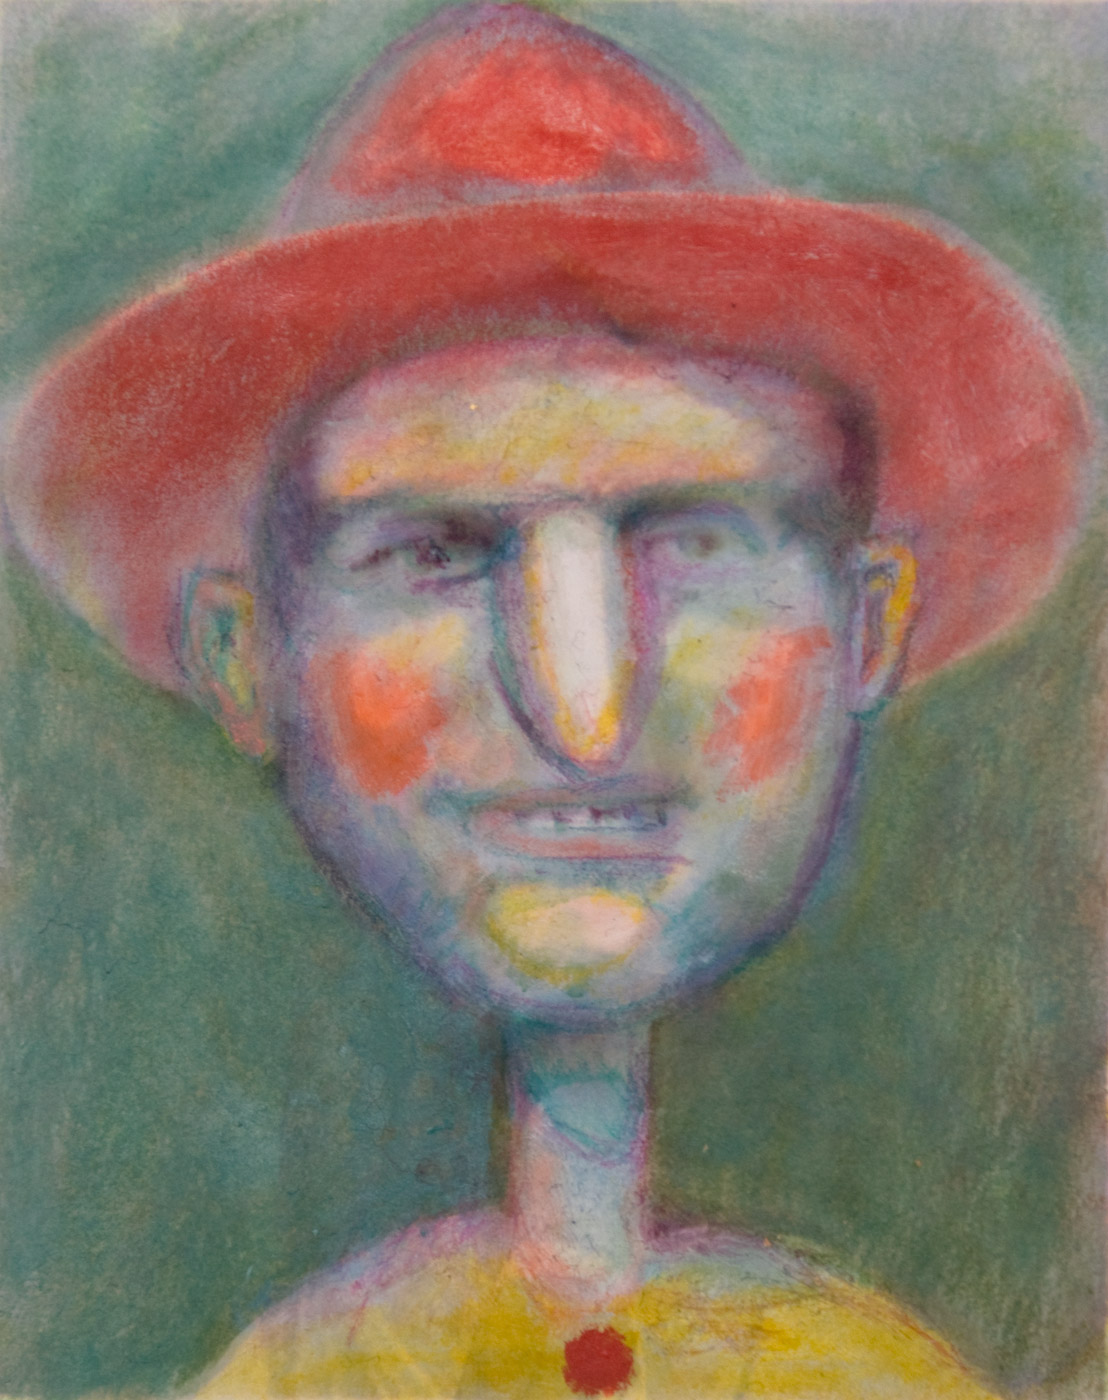 Portrait von Pinocchio 7, 14.5cm x 11.5cm, Tinte und Ölfarbe auf Papier